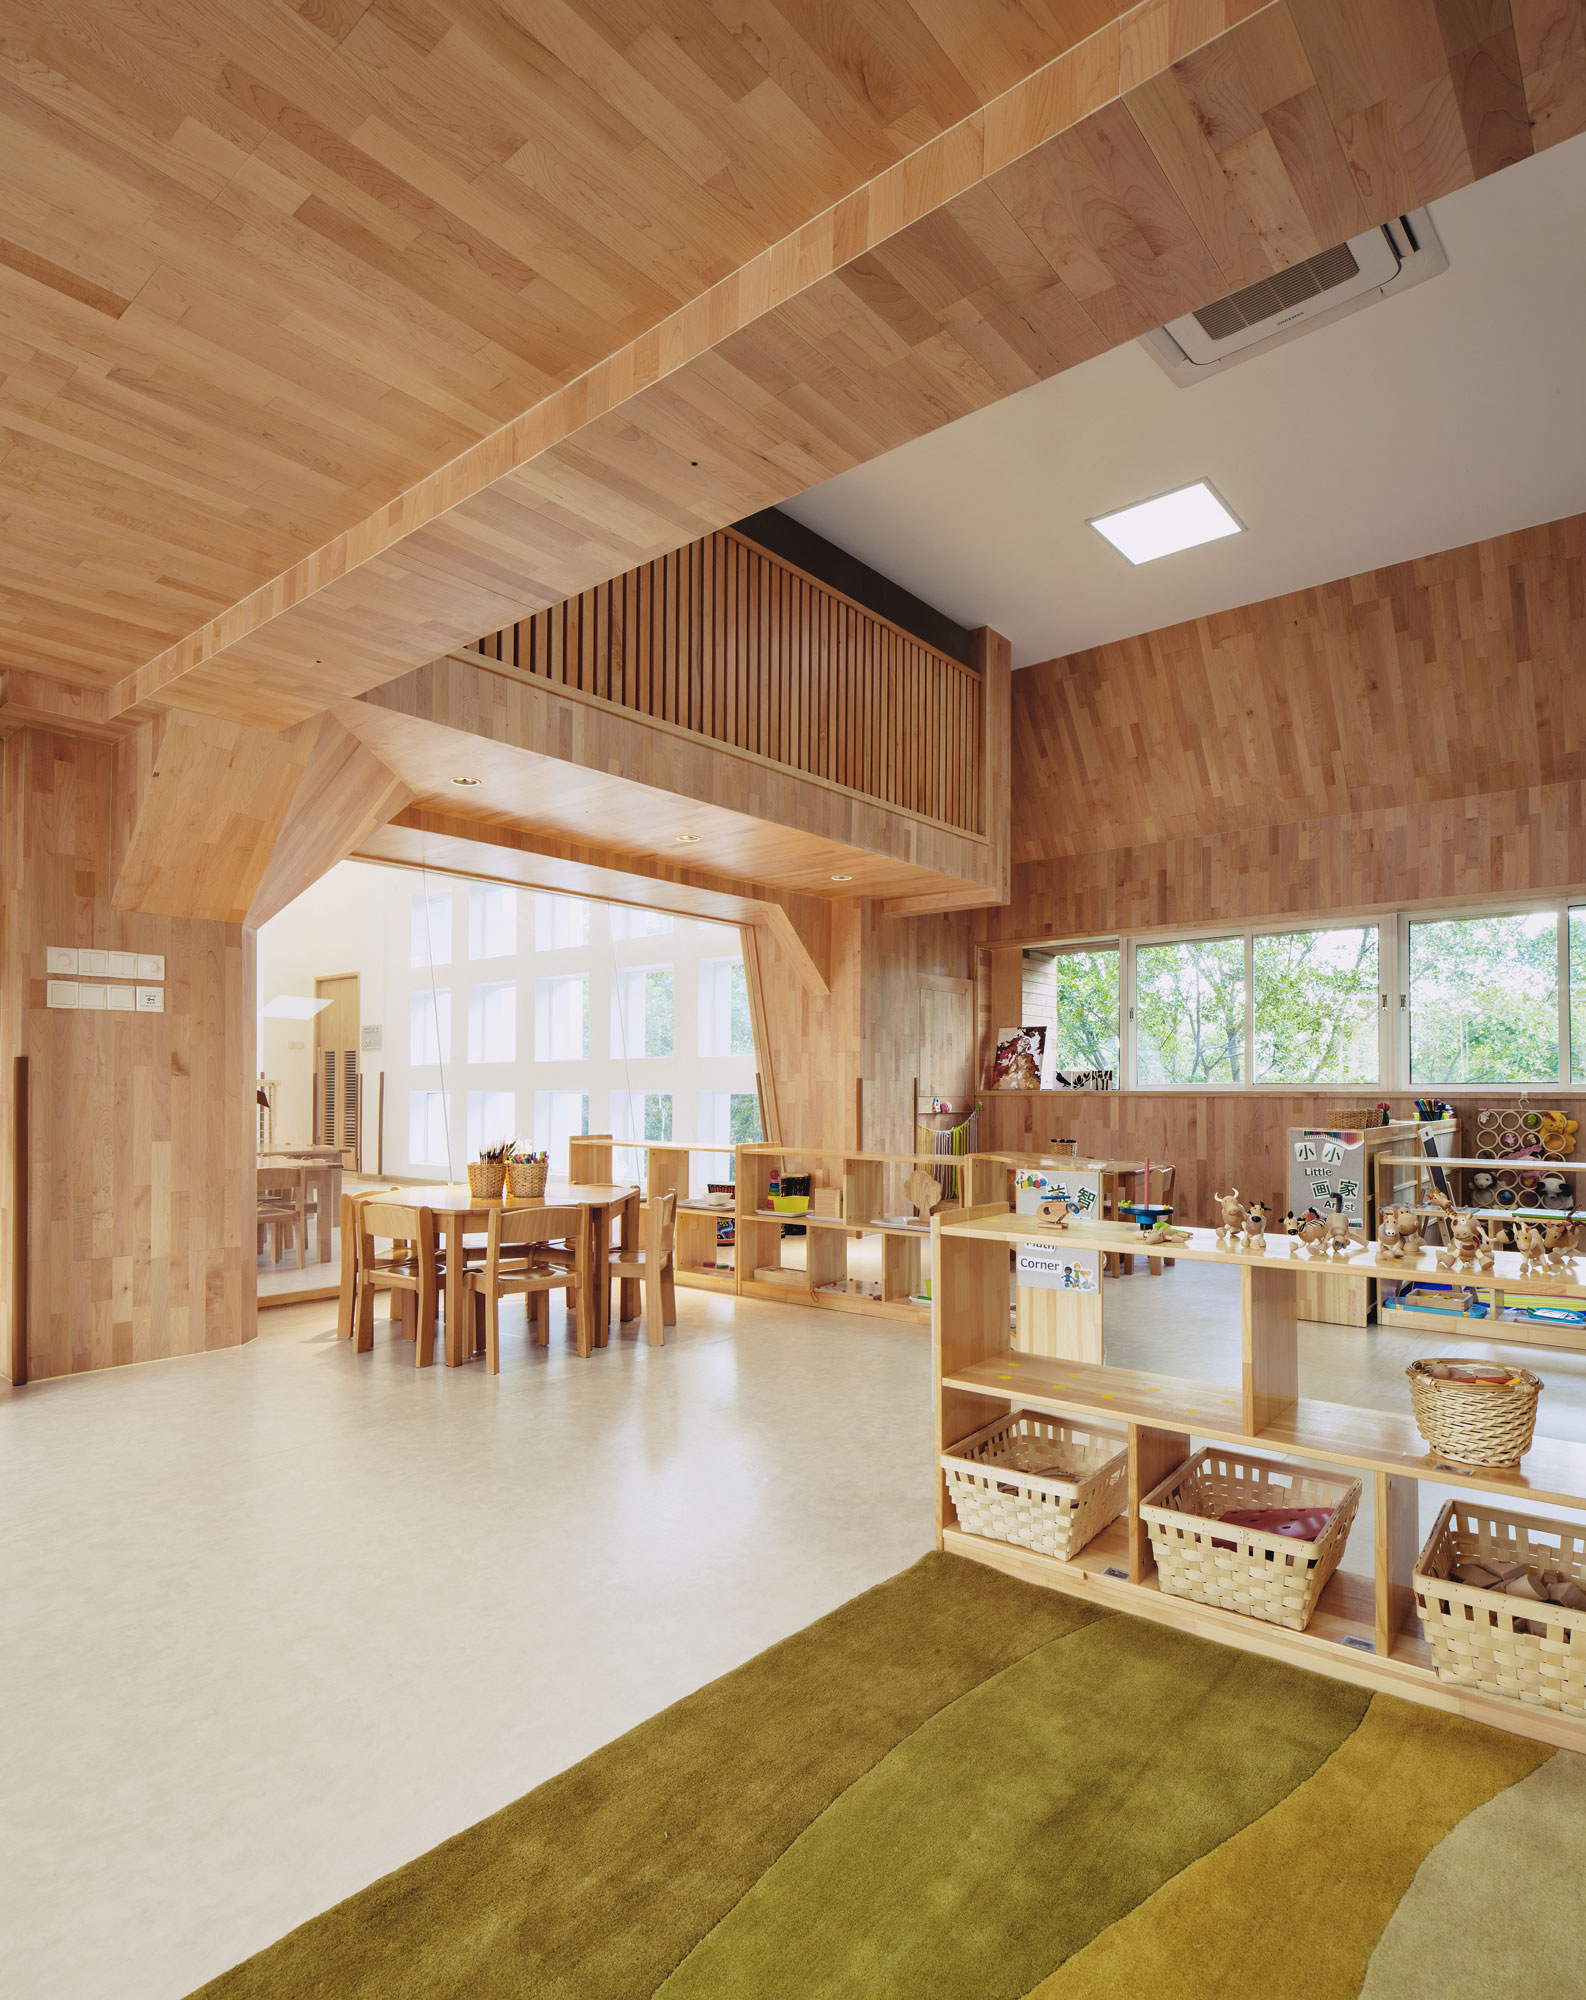 图片[8]|IBOBI国际幼儿园福田校区|ART-Arrakis | 建筑室内设计的创新与灵感